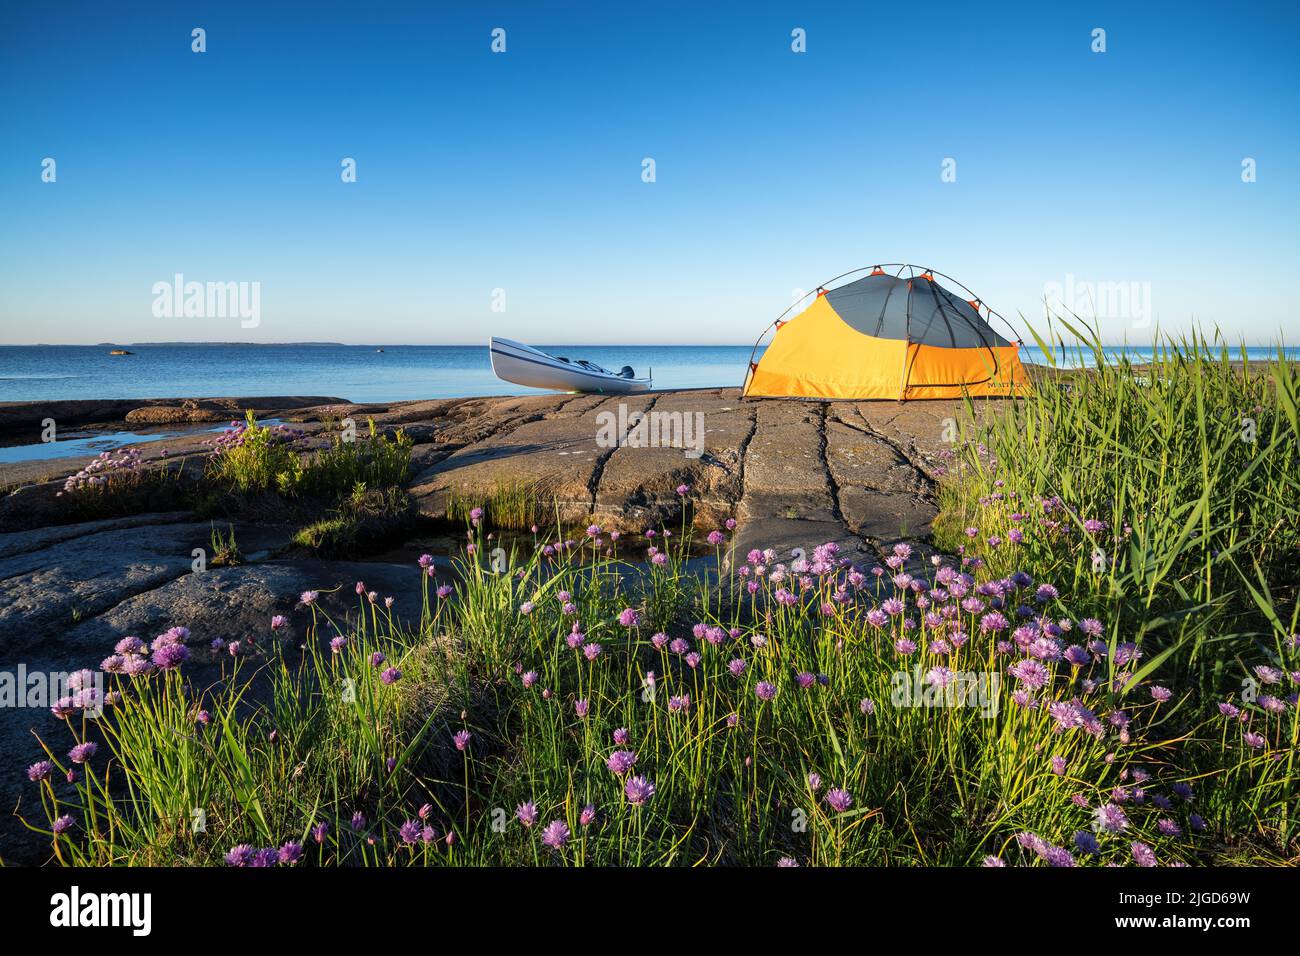 Camping and kayaking at Koivuluoto island, Hamina, Finland Stock Photo